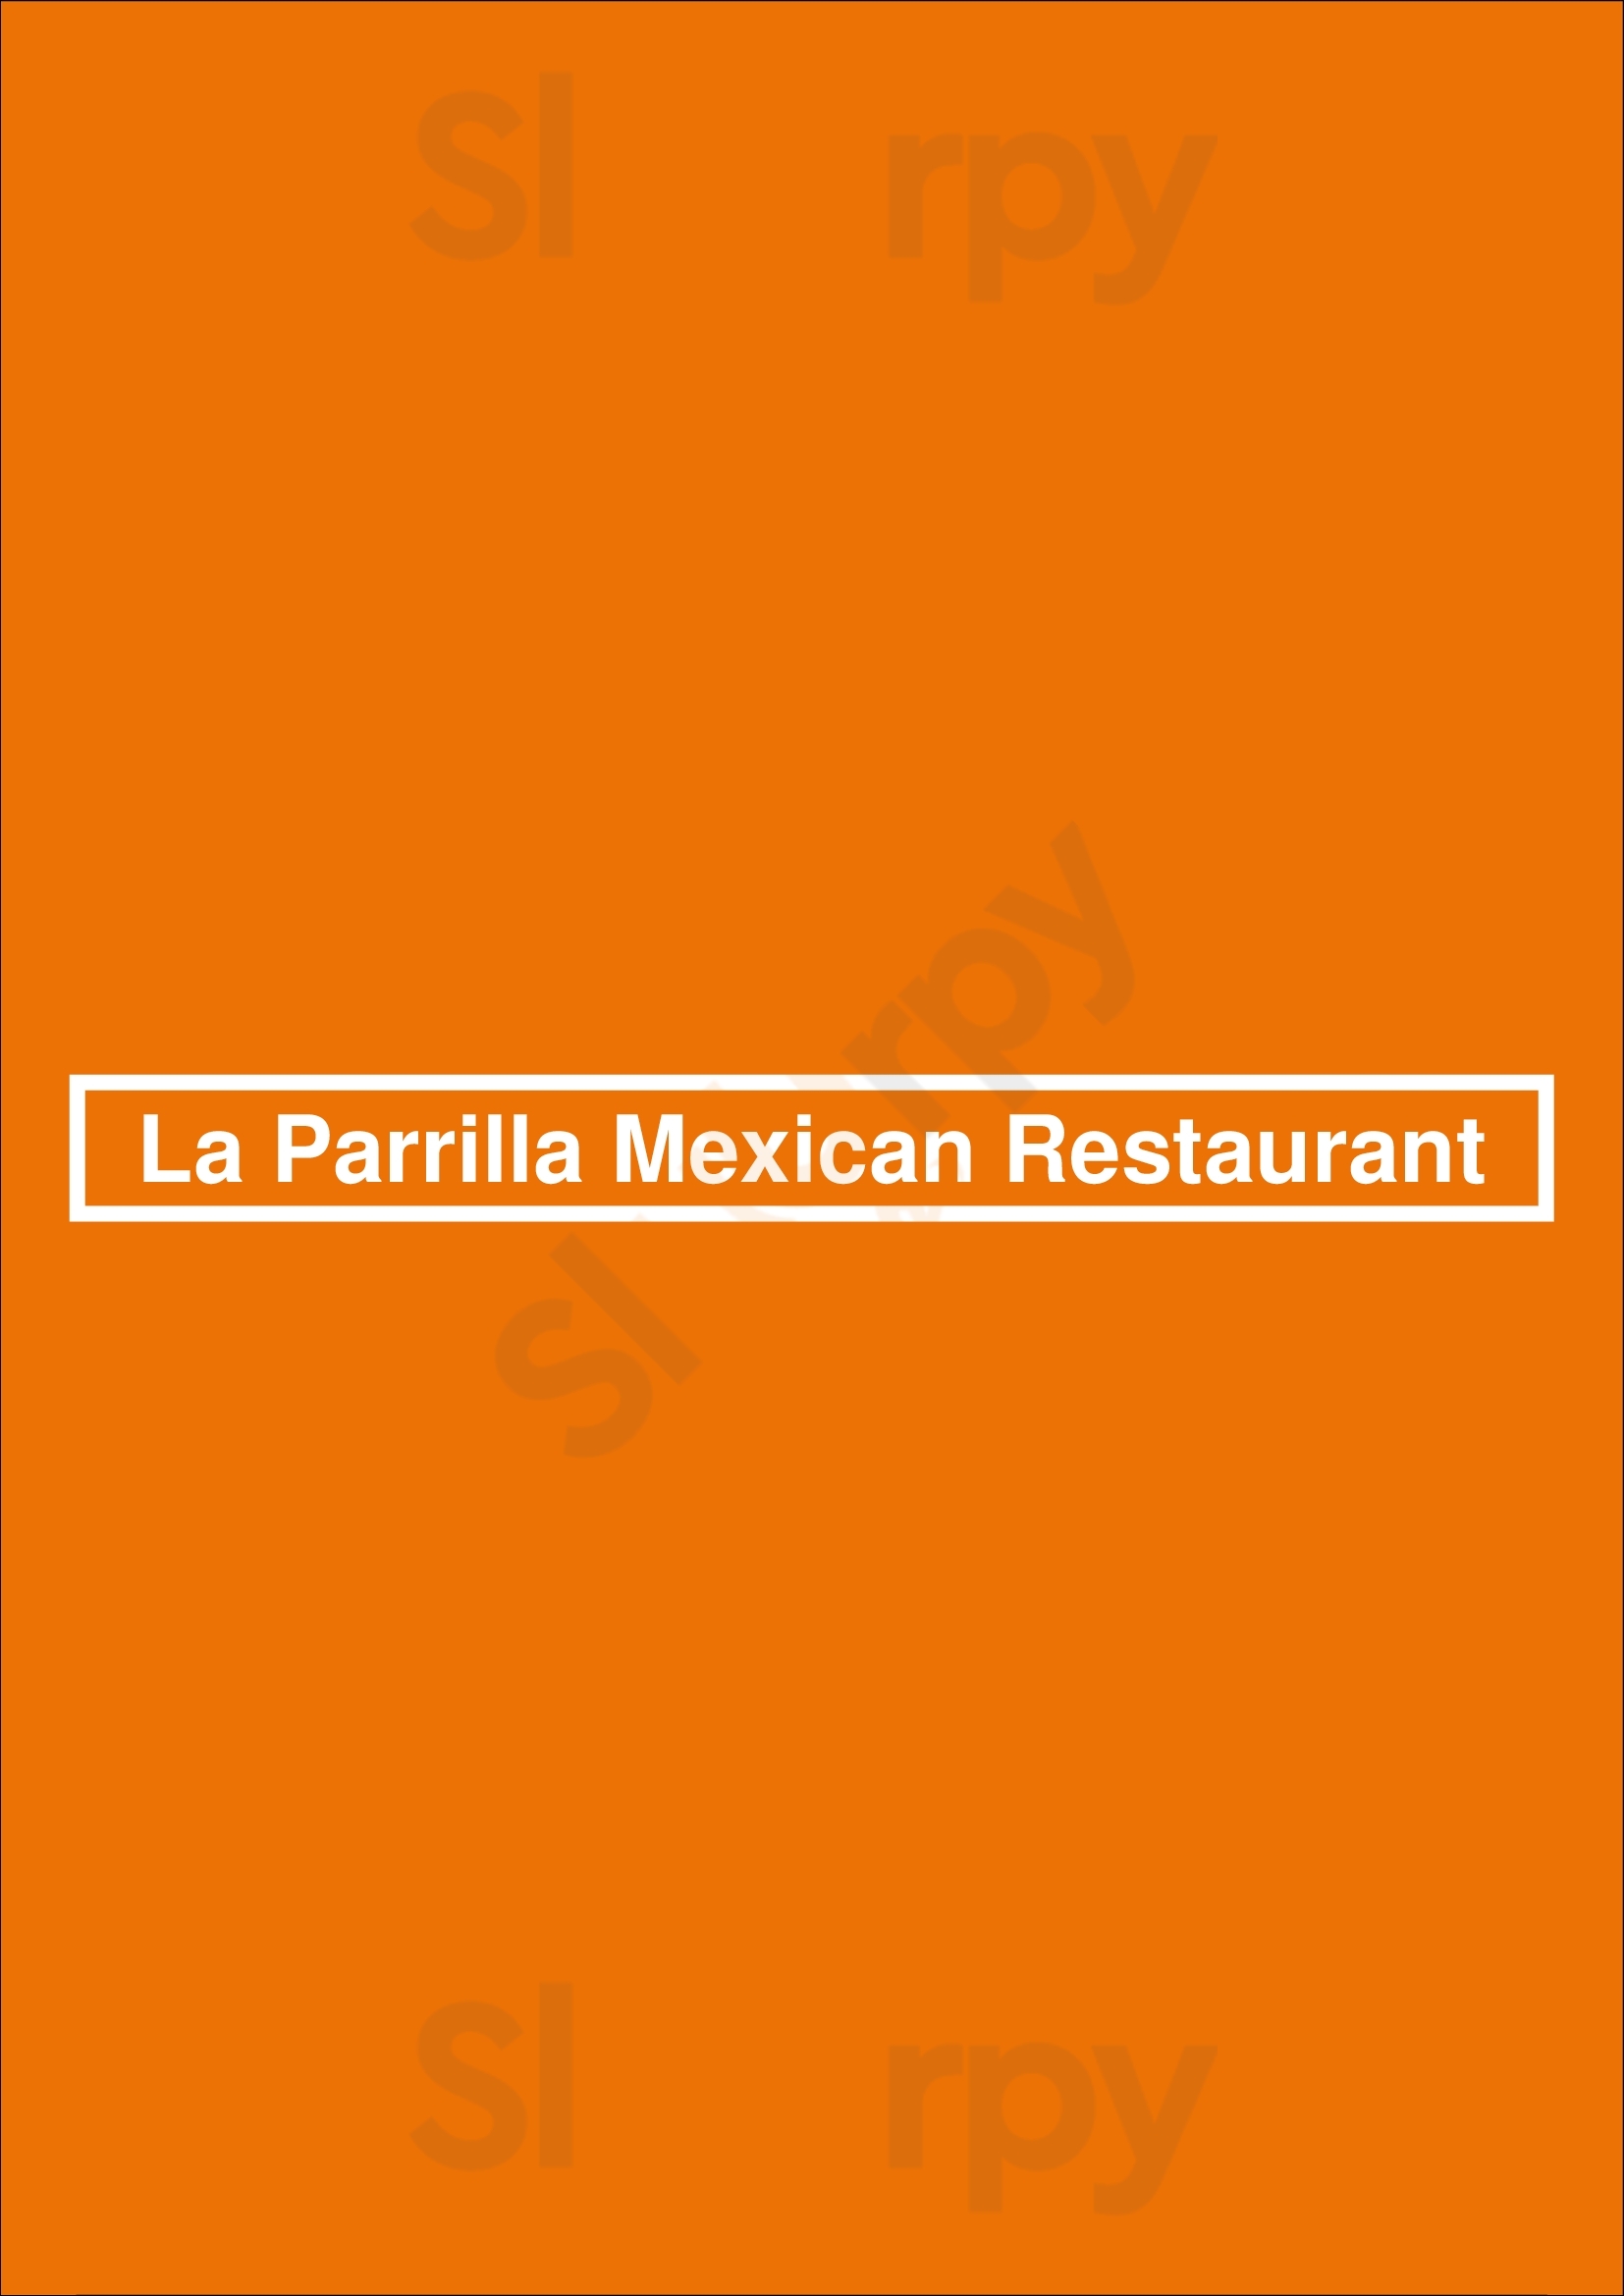 La Parrilla Mexican Restaurant Greenville Menu - 1